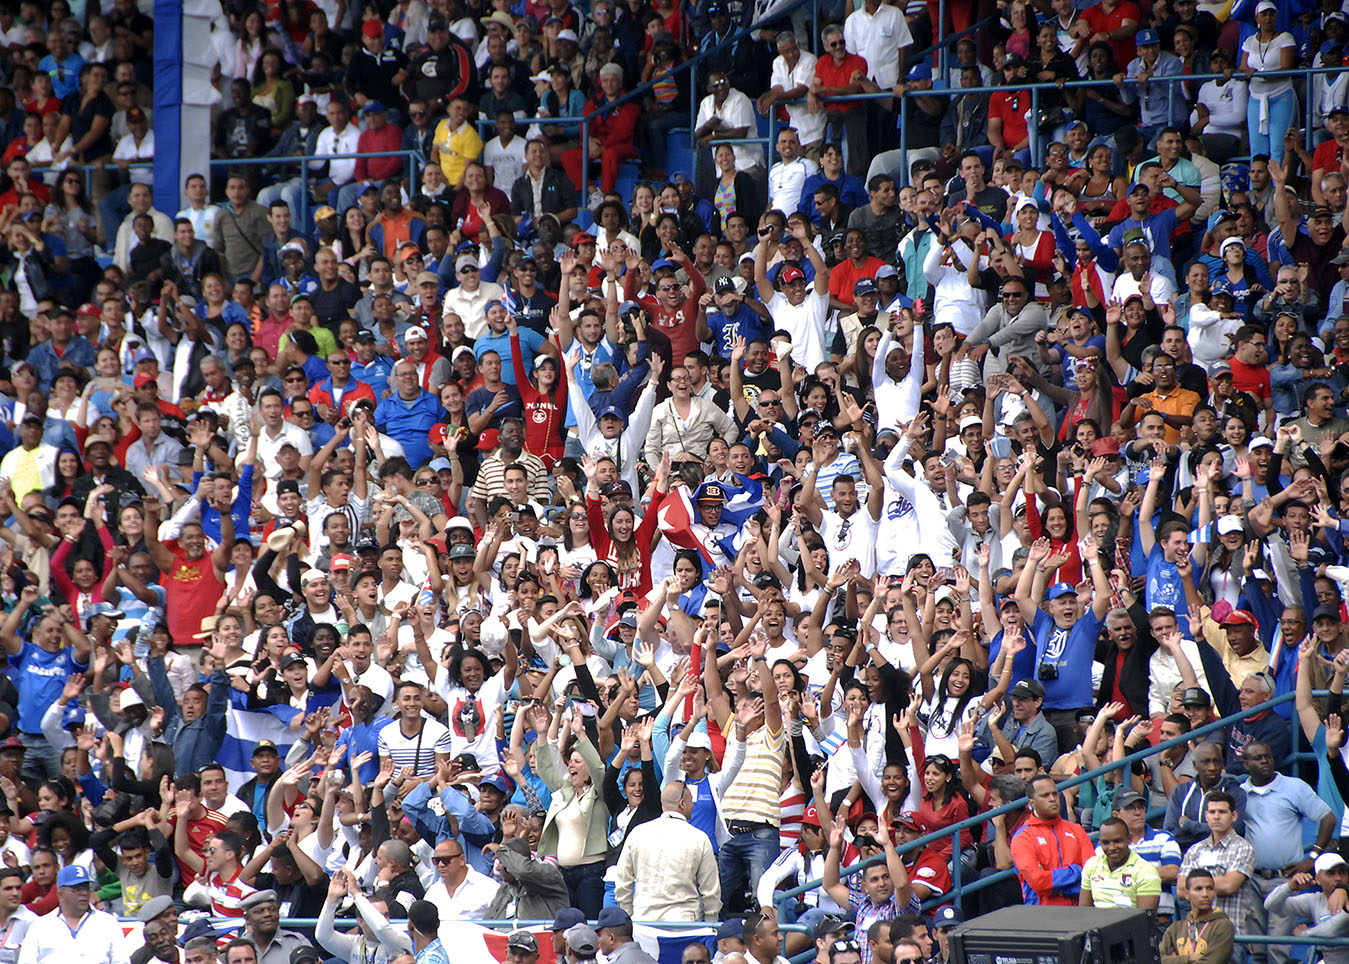 Béisbol en Cuba: aniversario